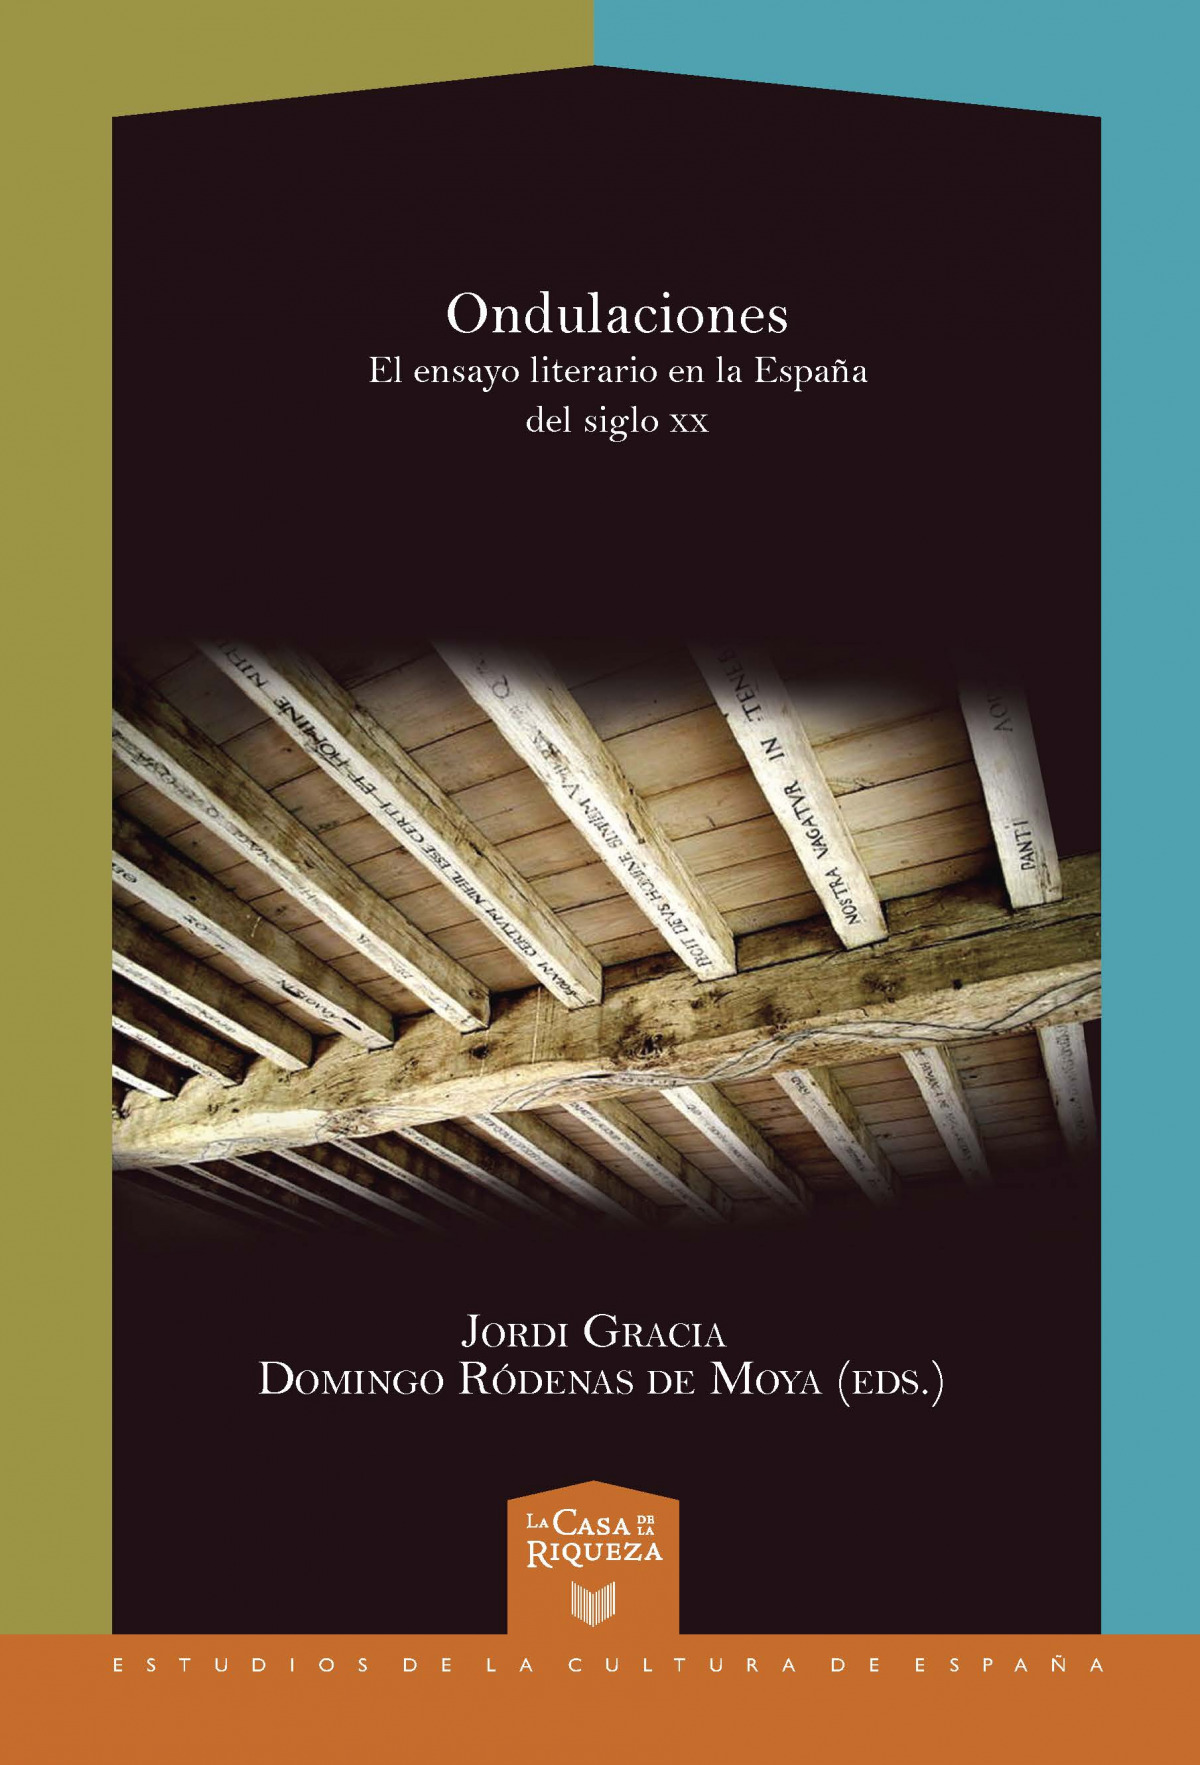 Ondulaciones. El ensayo literario en la España del siglo XX - Gracia, Jordi / Rodenas De Moya, Domingo